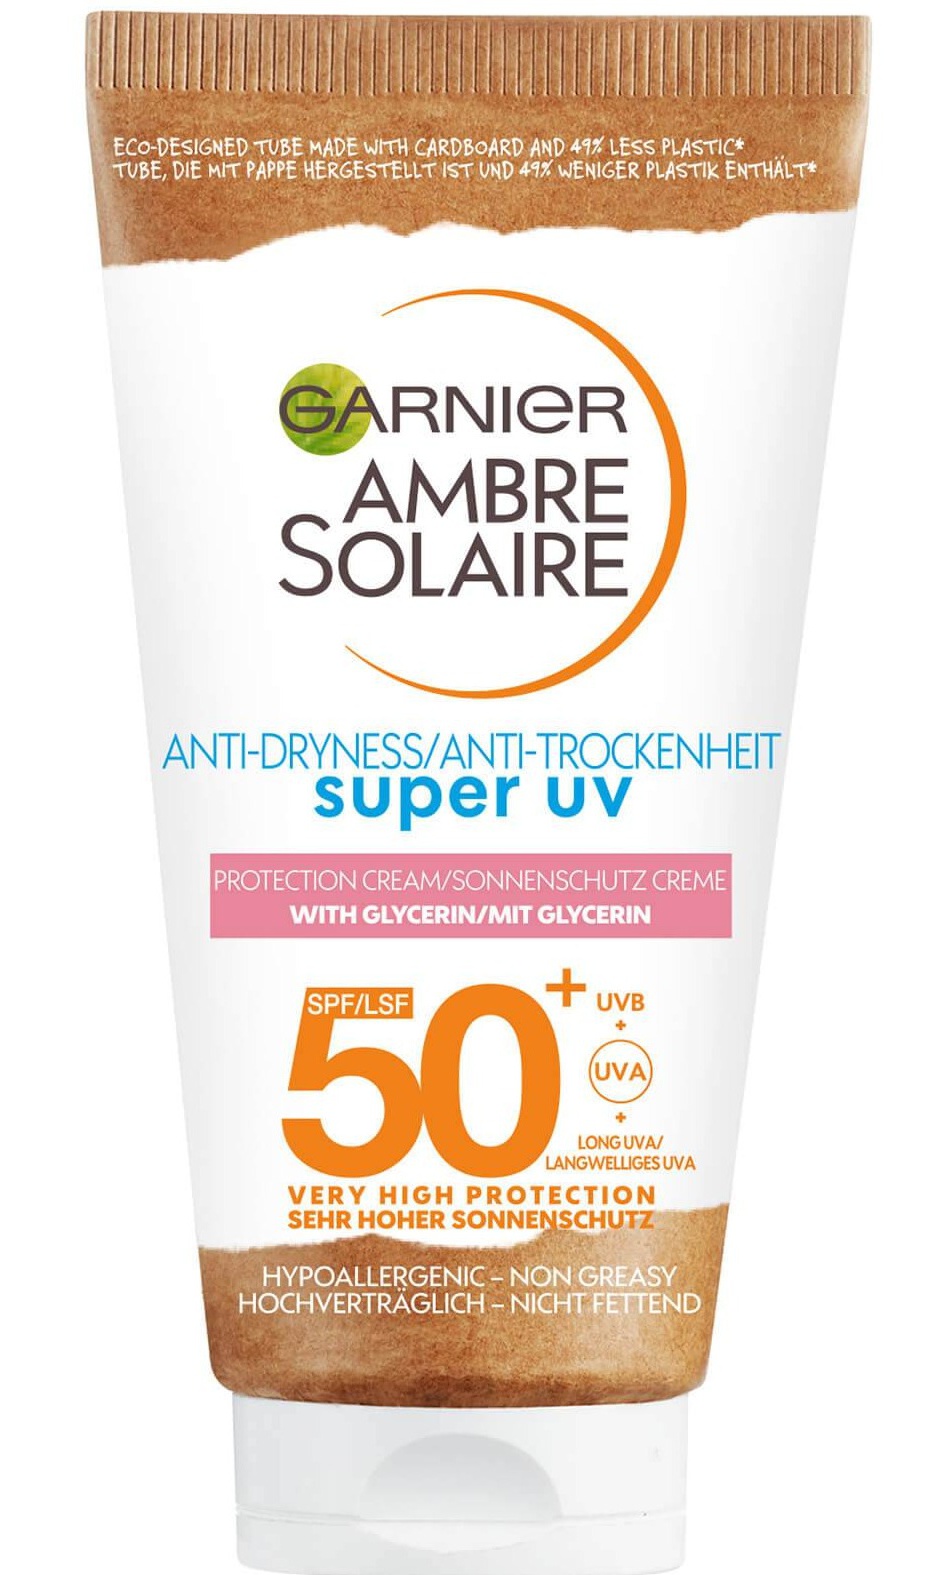 Garnier Ambre Solaire Anti-Dryness Super UV Protection Cream SPF 50+